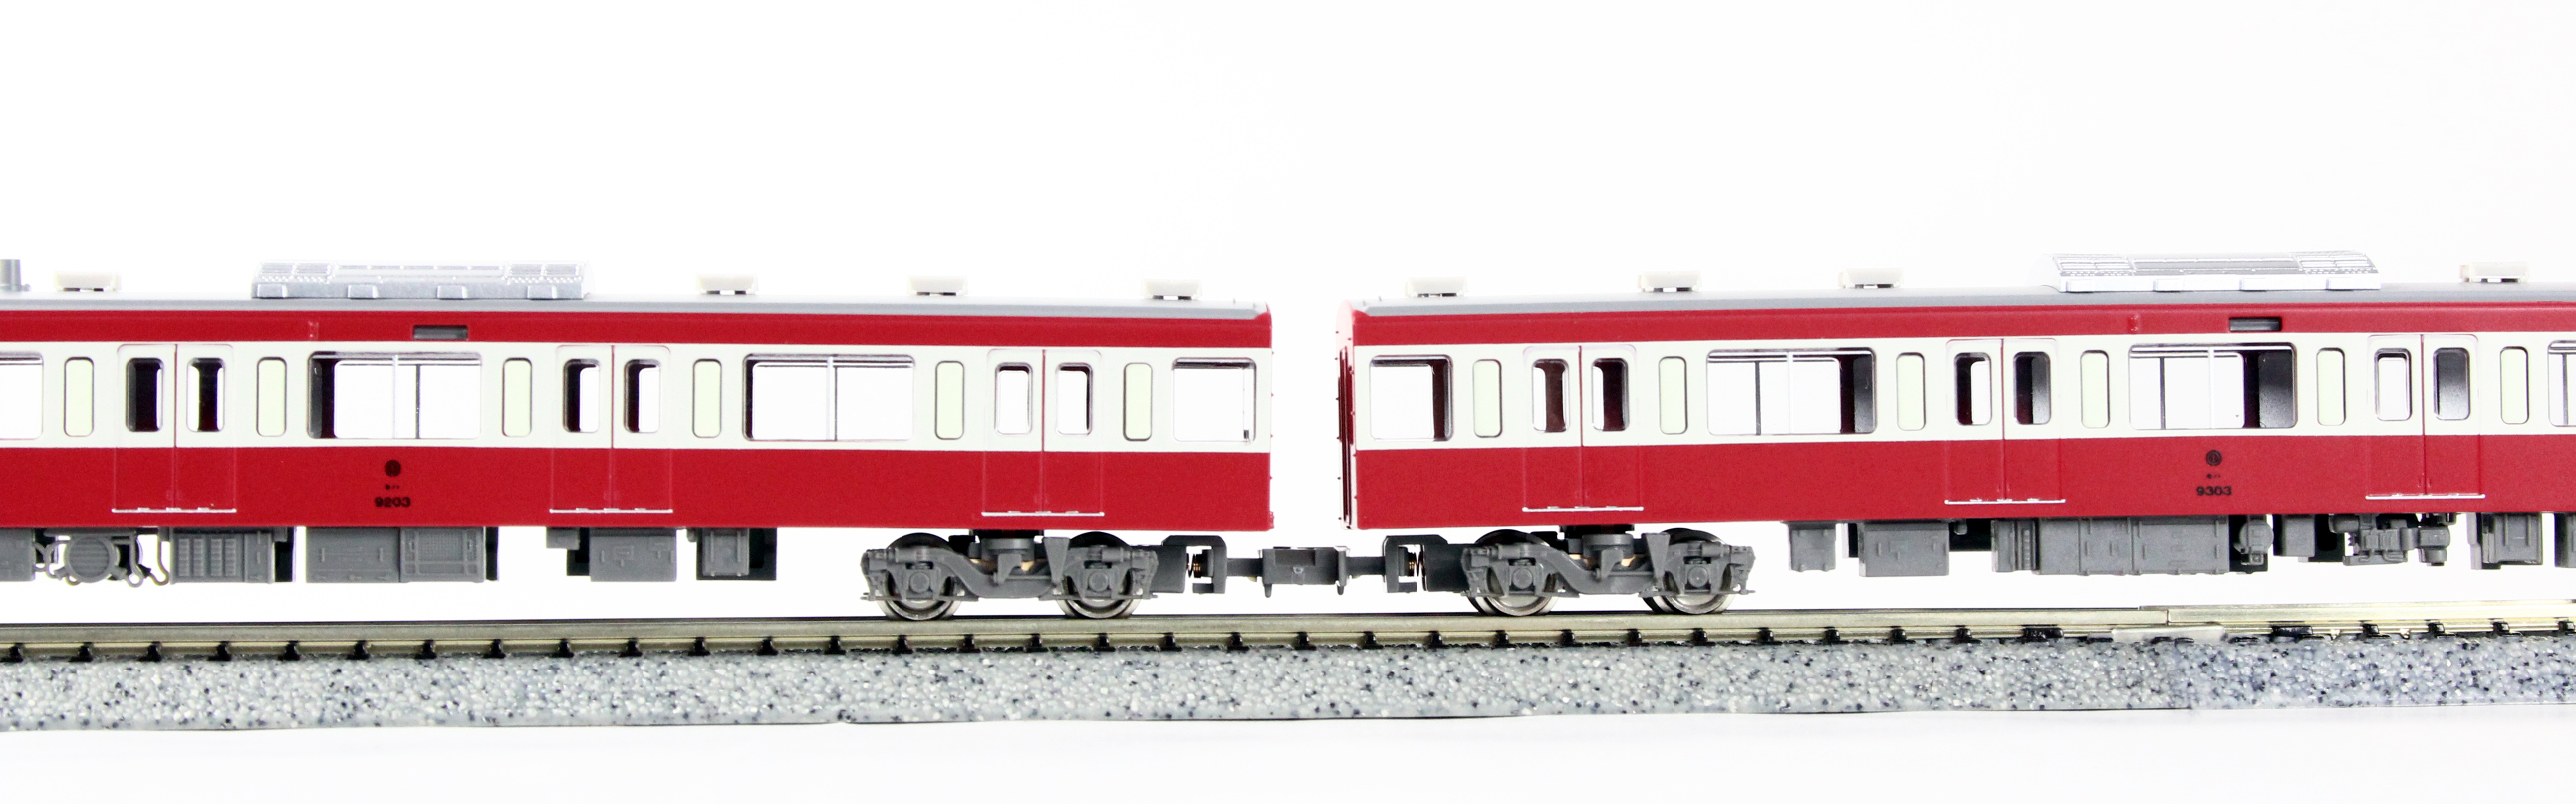 ☆再生産☆グリーンマックス 50043 西武9000系 幸運の赤い電車 RED